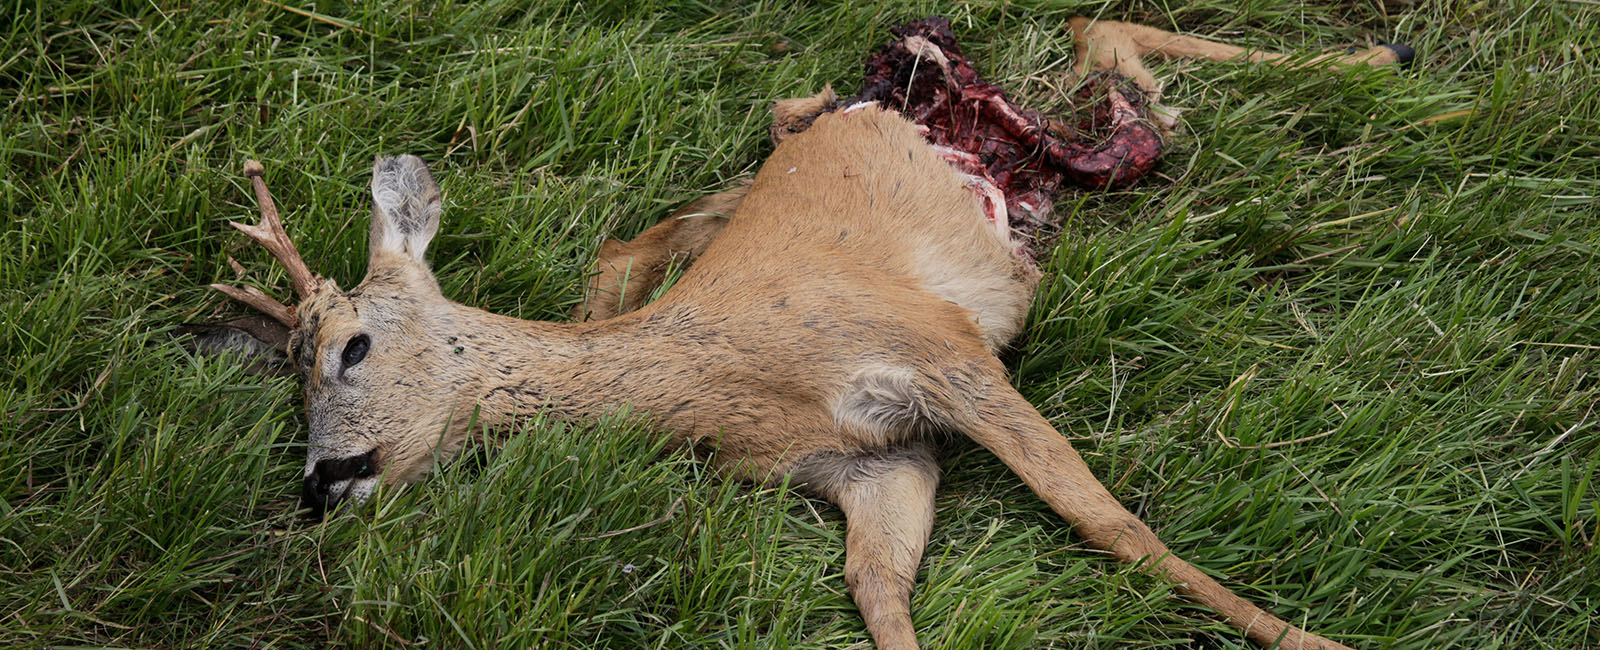 Traurige Jagdbilanz: Diese Tiere töten Jäger am häufigsten